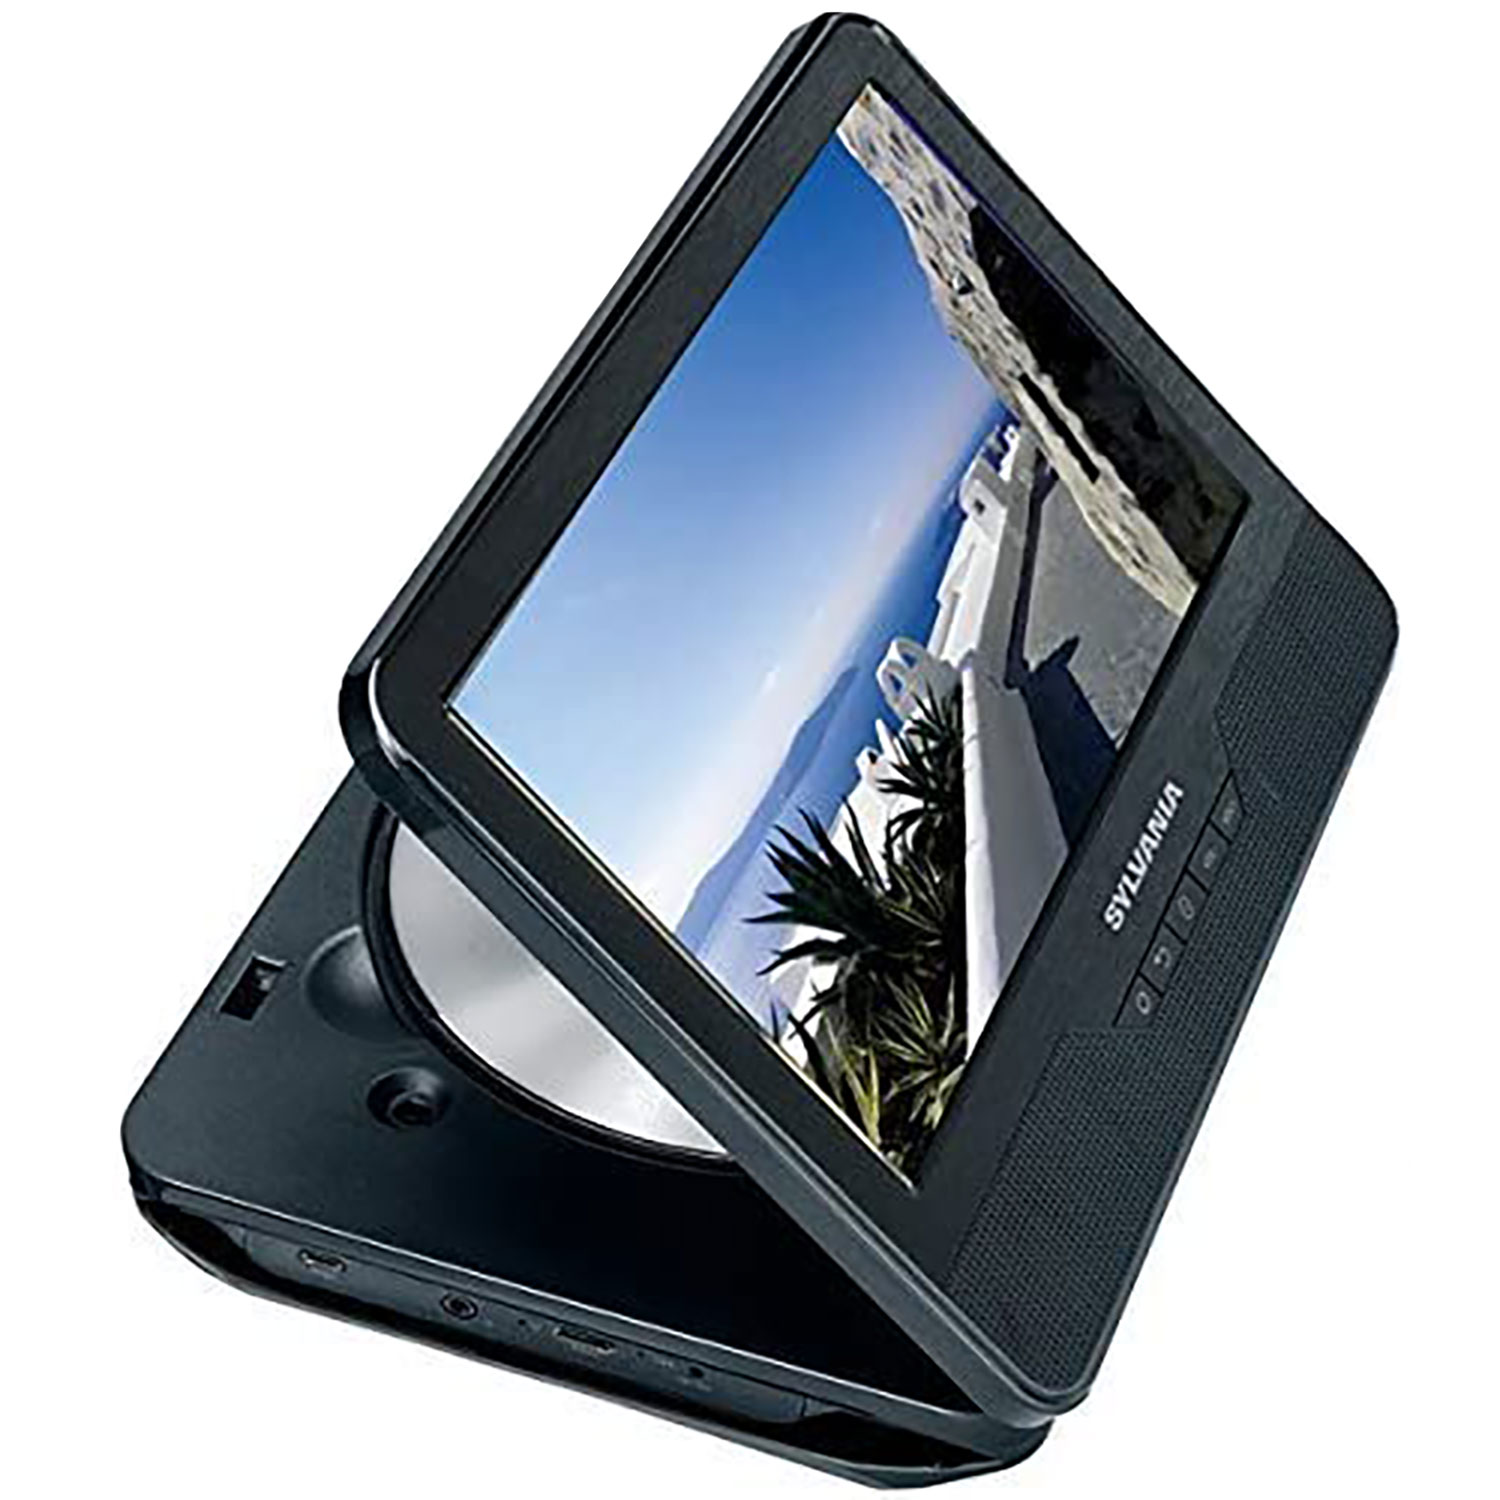 Tablette Android 9, lecteur DVD portable intégré, Fr